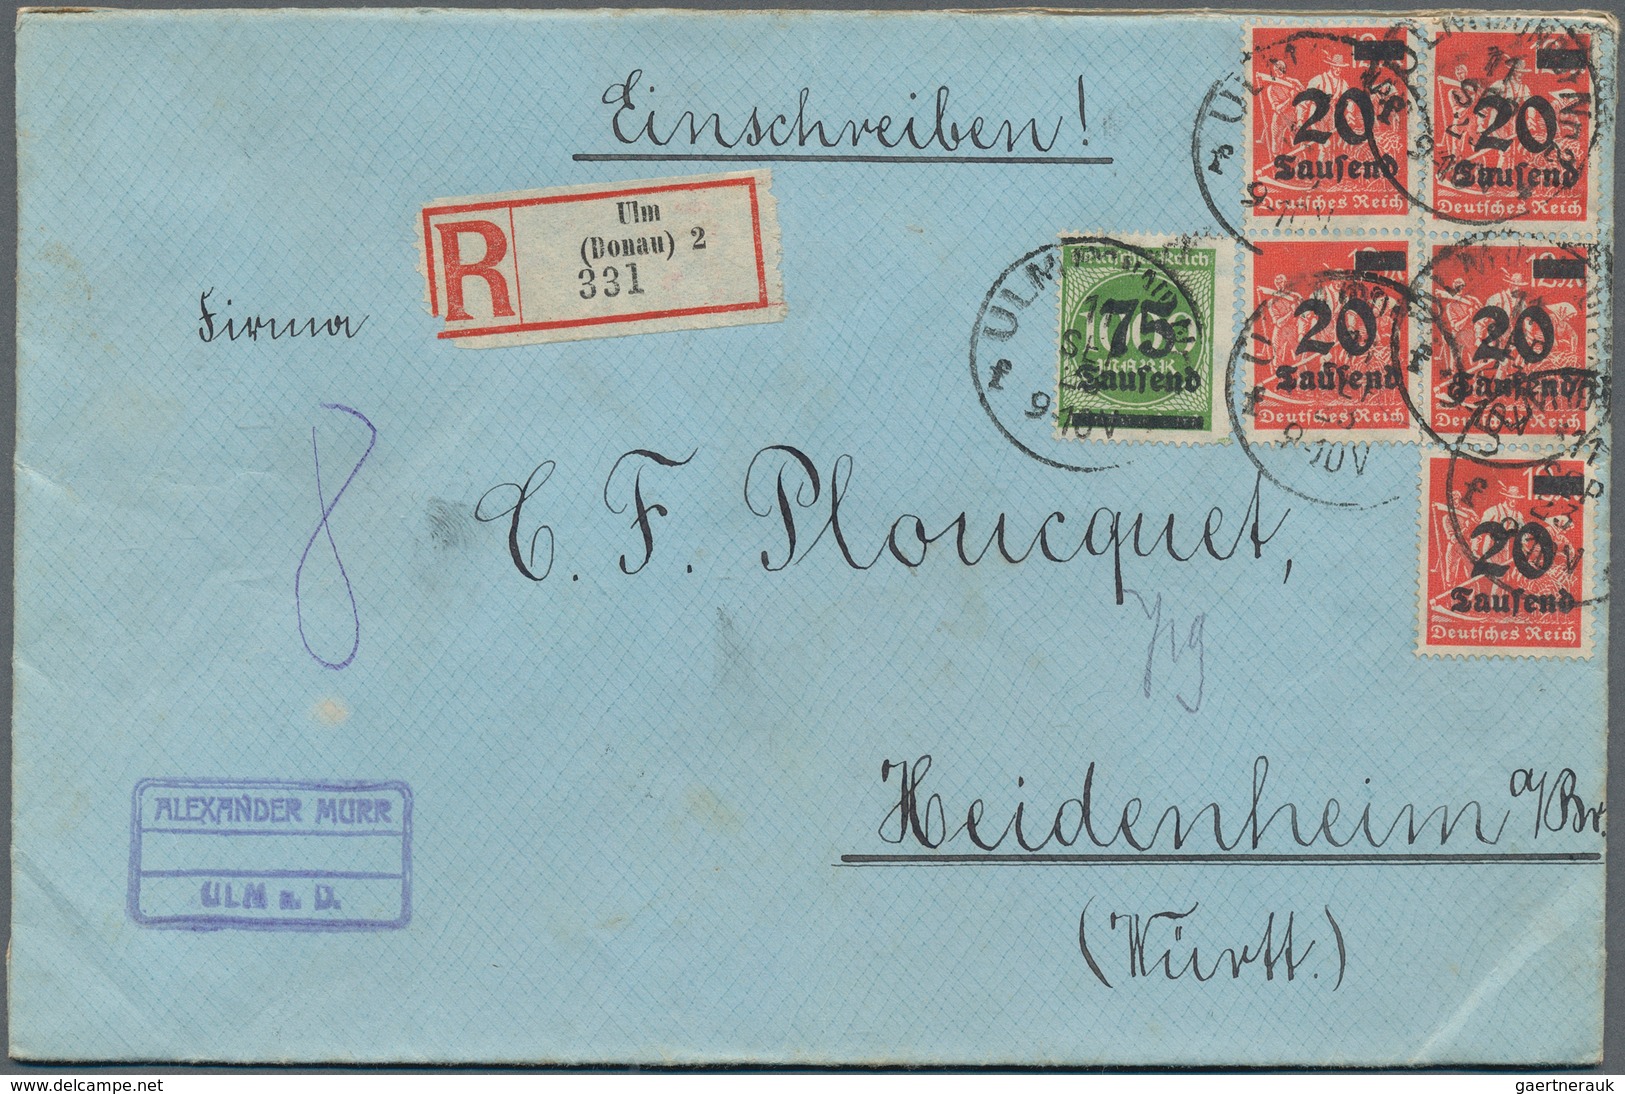 31553 Deutsches Reich - Inflation: 1919/1923, Bestand von ca. 675 Bedarfsbriefen aus Firmenkorrespondenz n